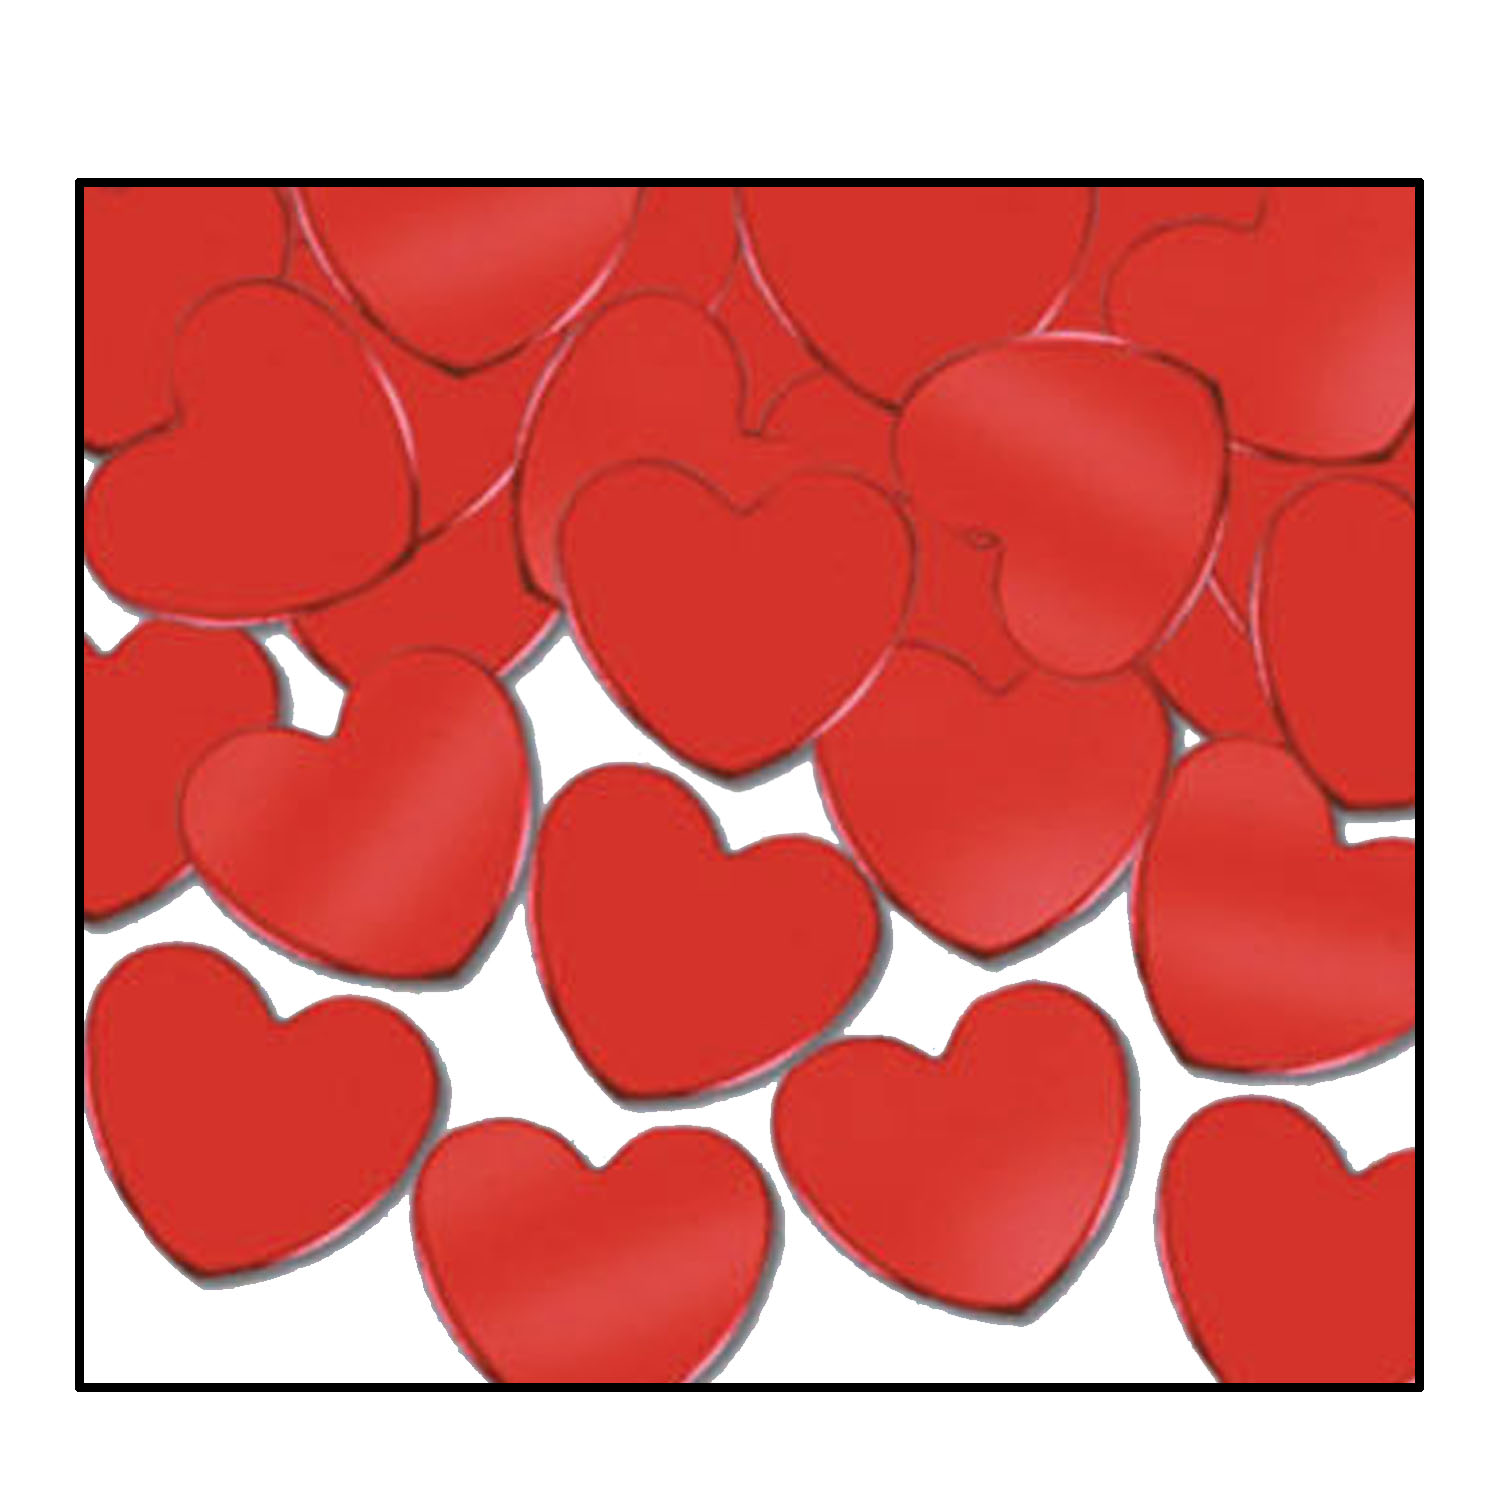 Table Confetti - Red Hearts (28gm)